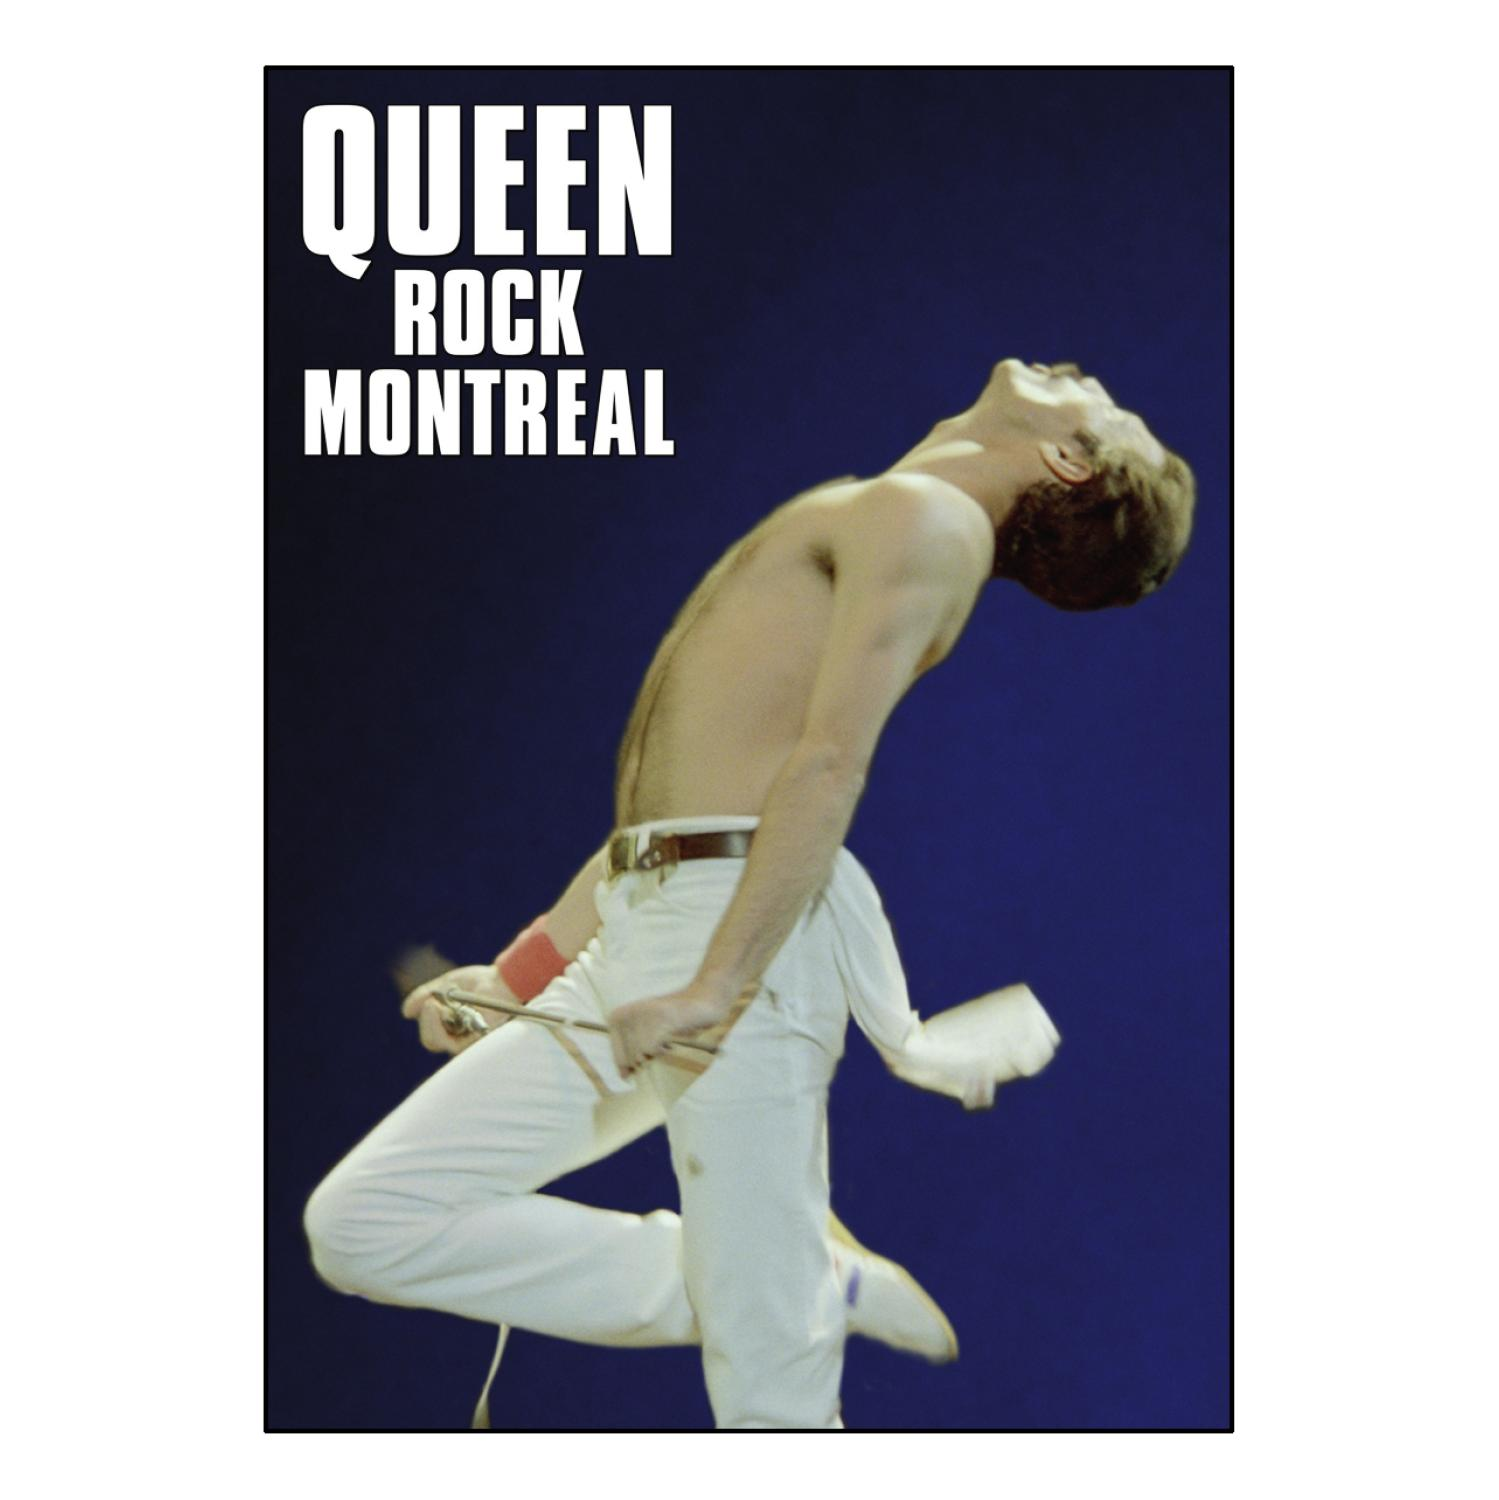 - Montreal Rock (DVD) - Queen